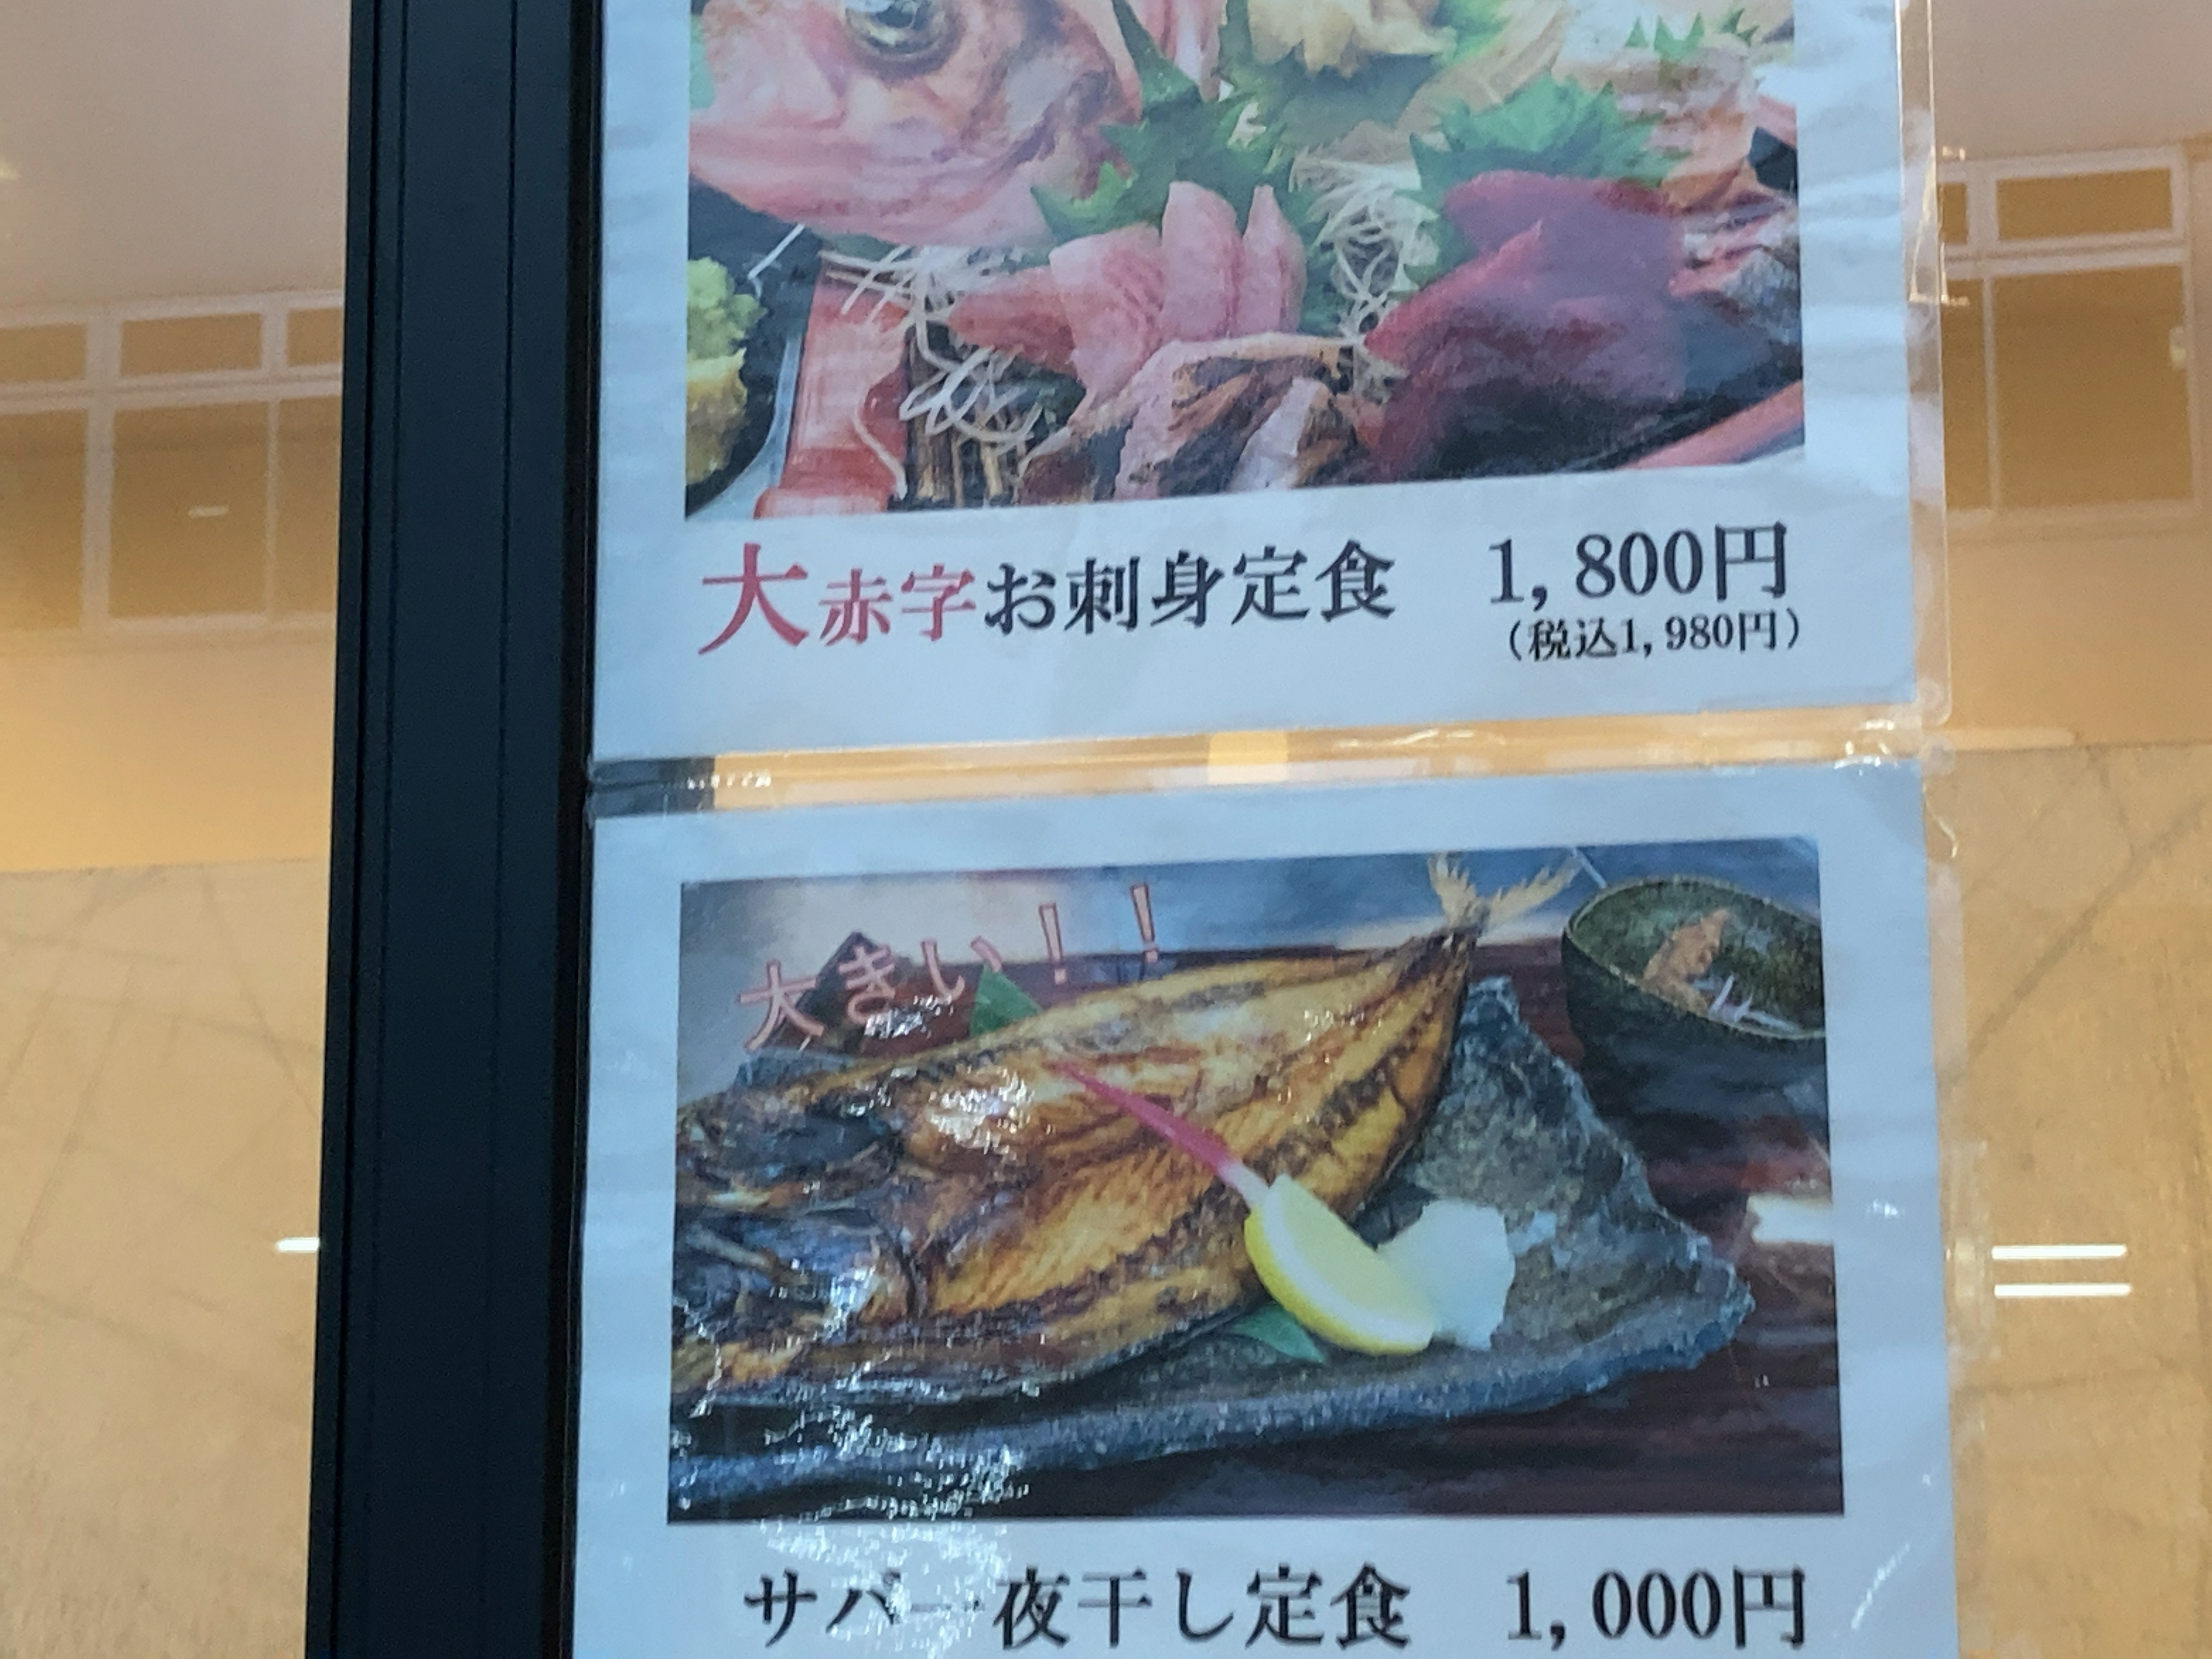  新潟市中央卸売市場 佐渡前握り 鮨寿 すしことぶき 舟盛り刺身定食のメニュー